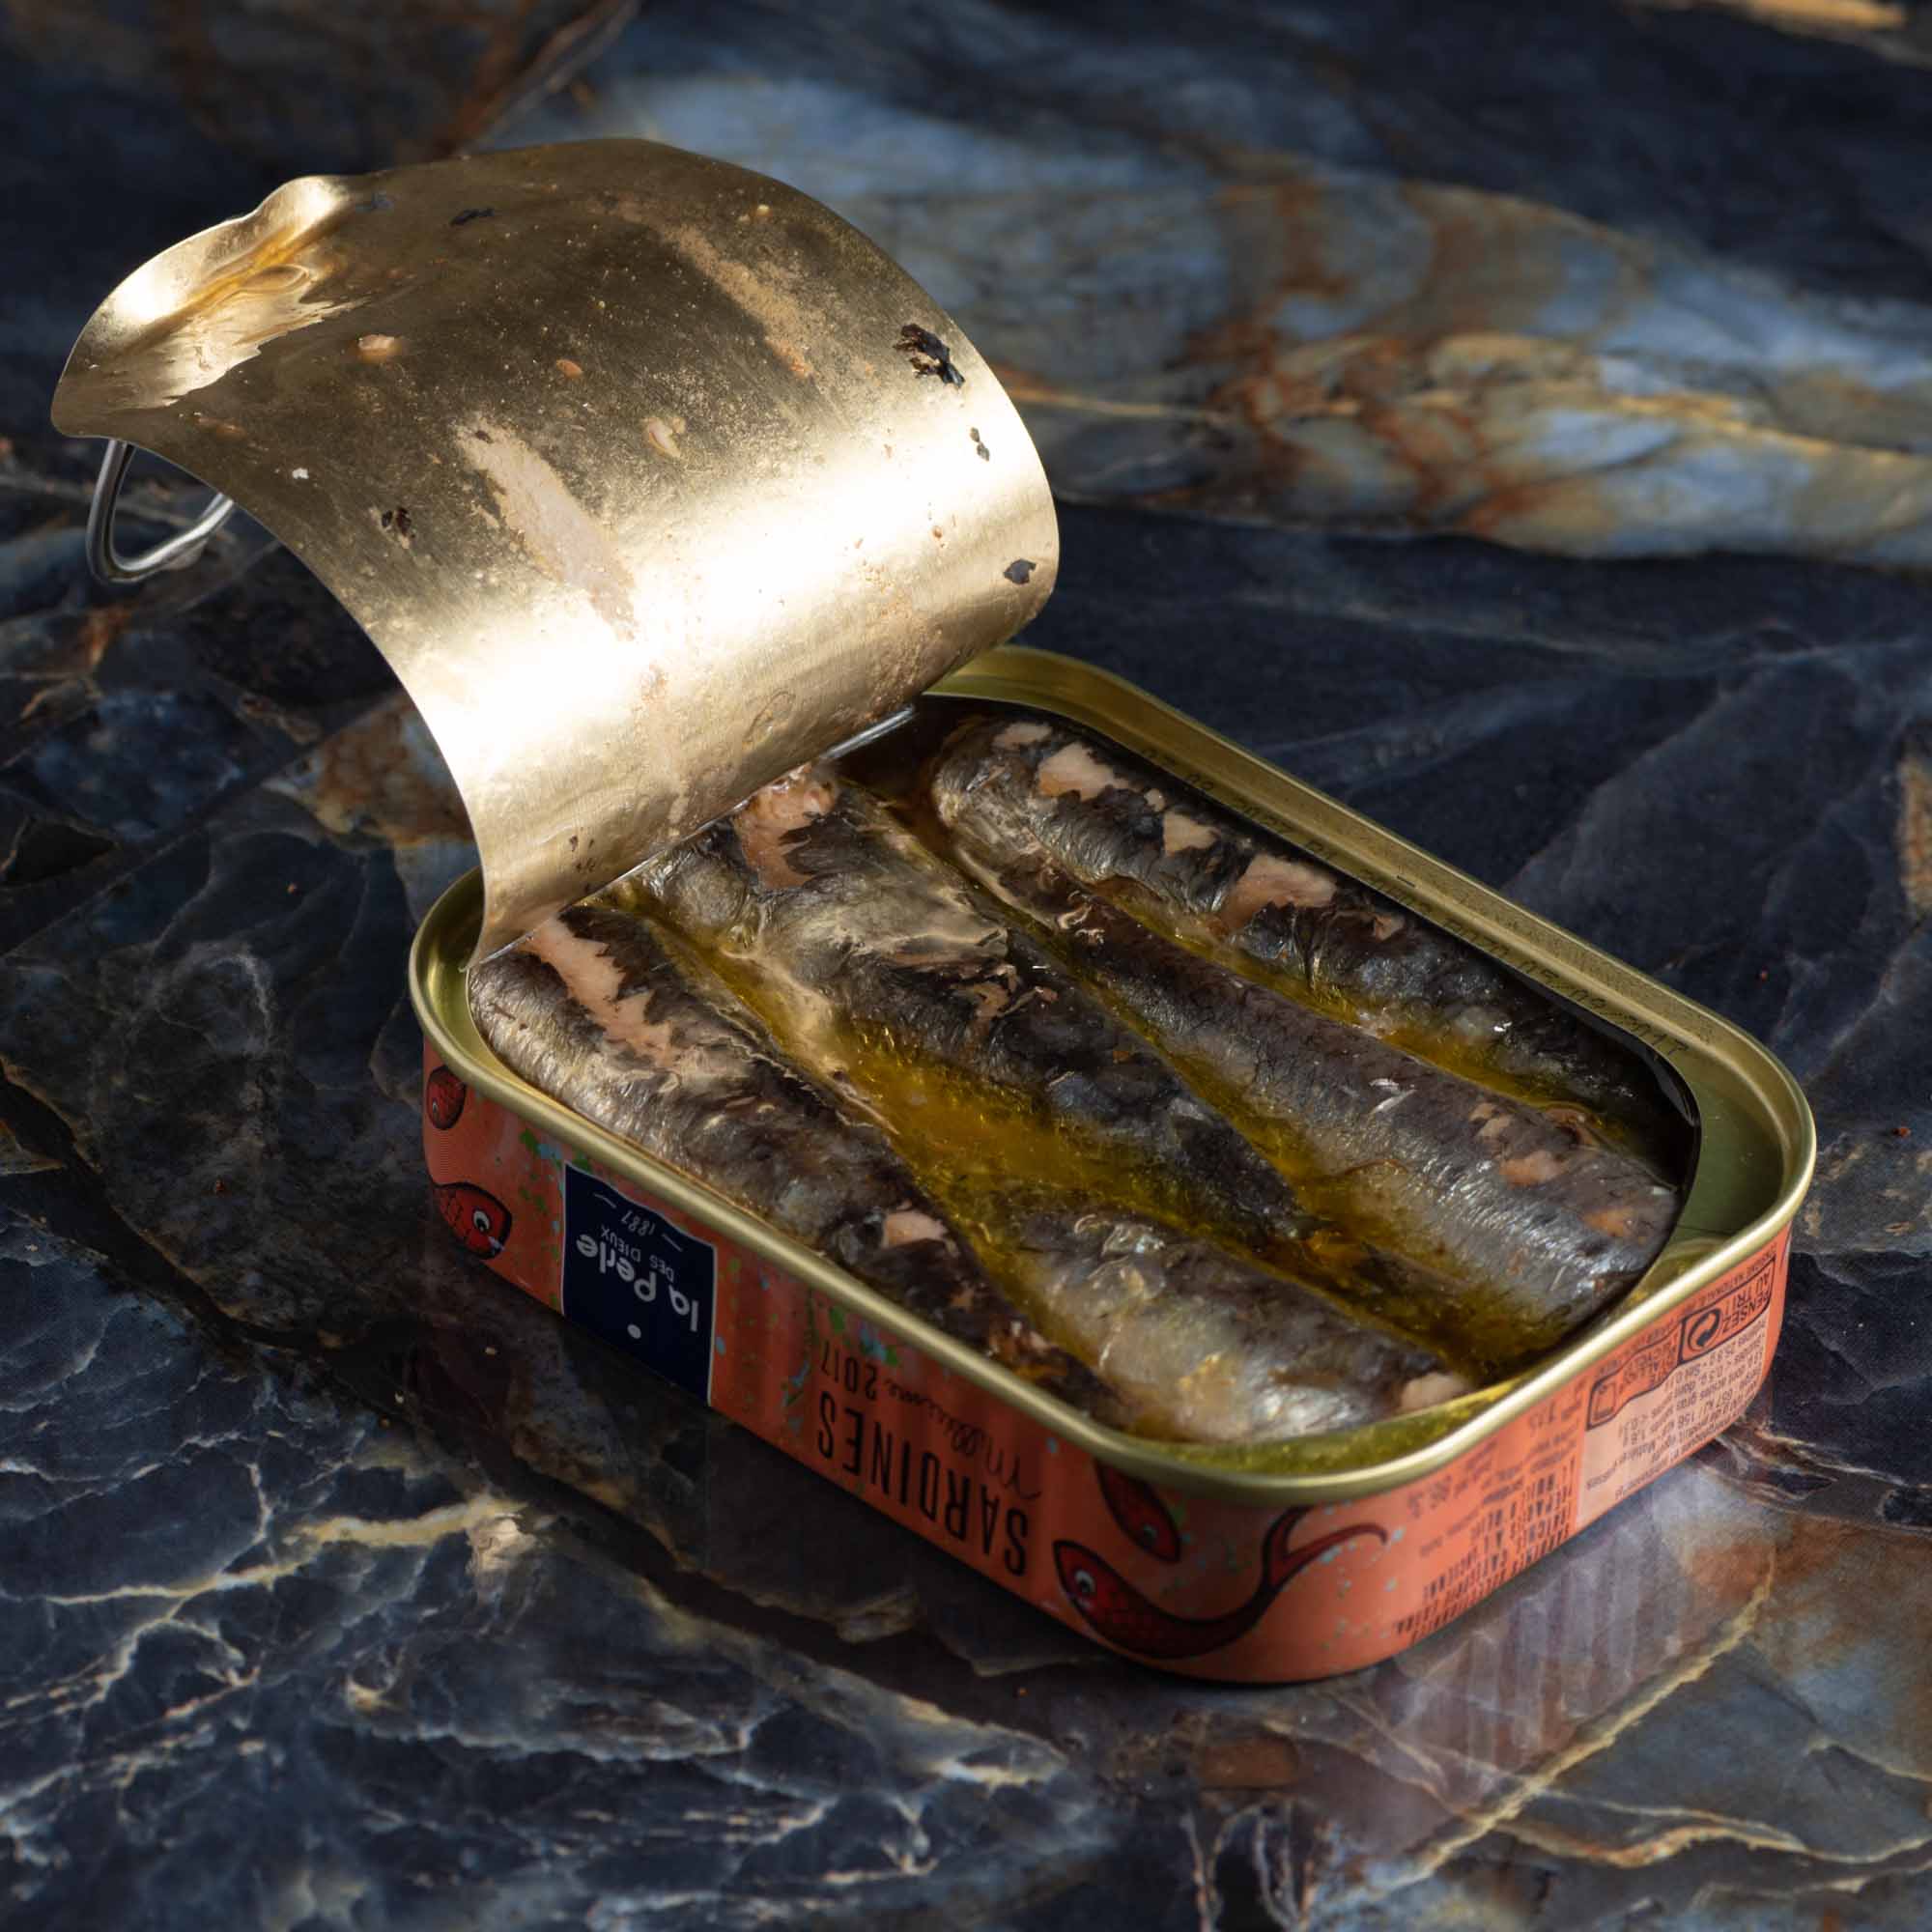 Fisch, Öl, Salz - mehr muss bei den meisten guten Sardinen nicht in die Dose.